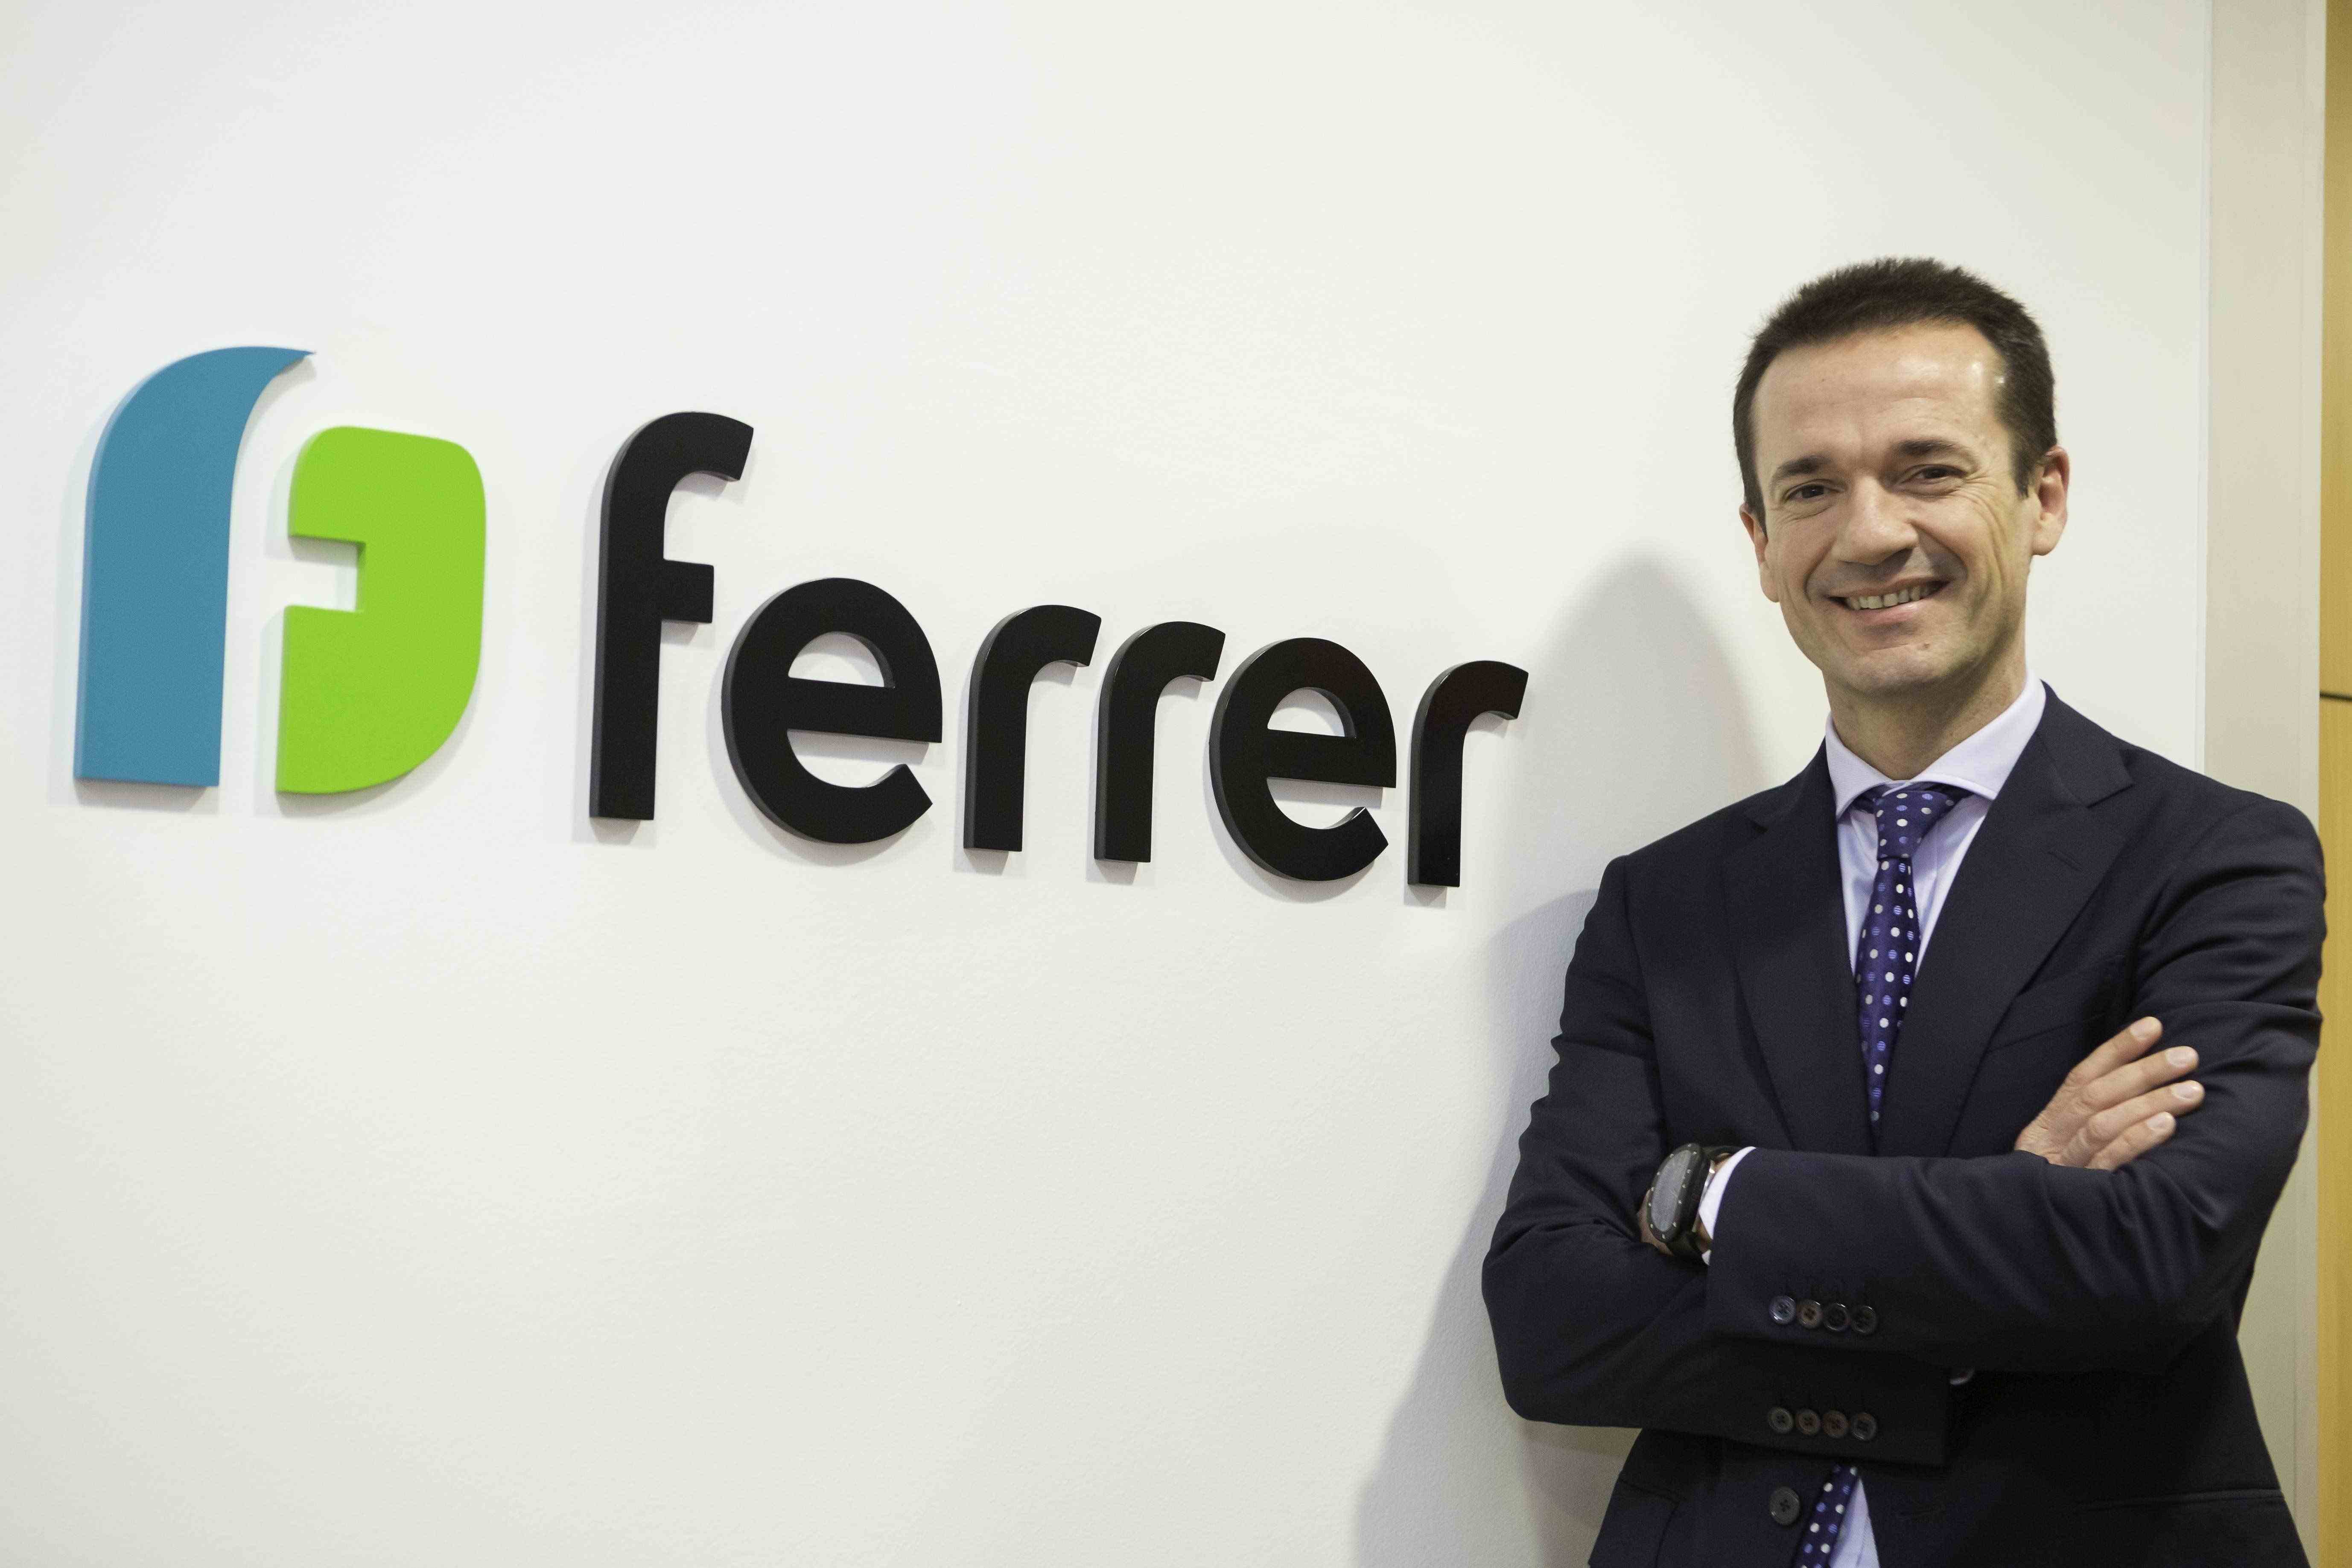 La farmacéutica Ferrer gana un 82% y ultima el lanzamiento de nuevos medicamentos